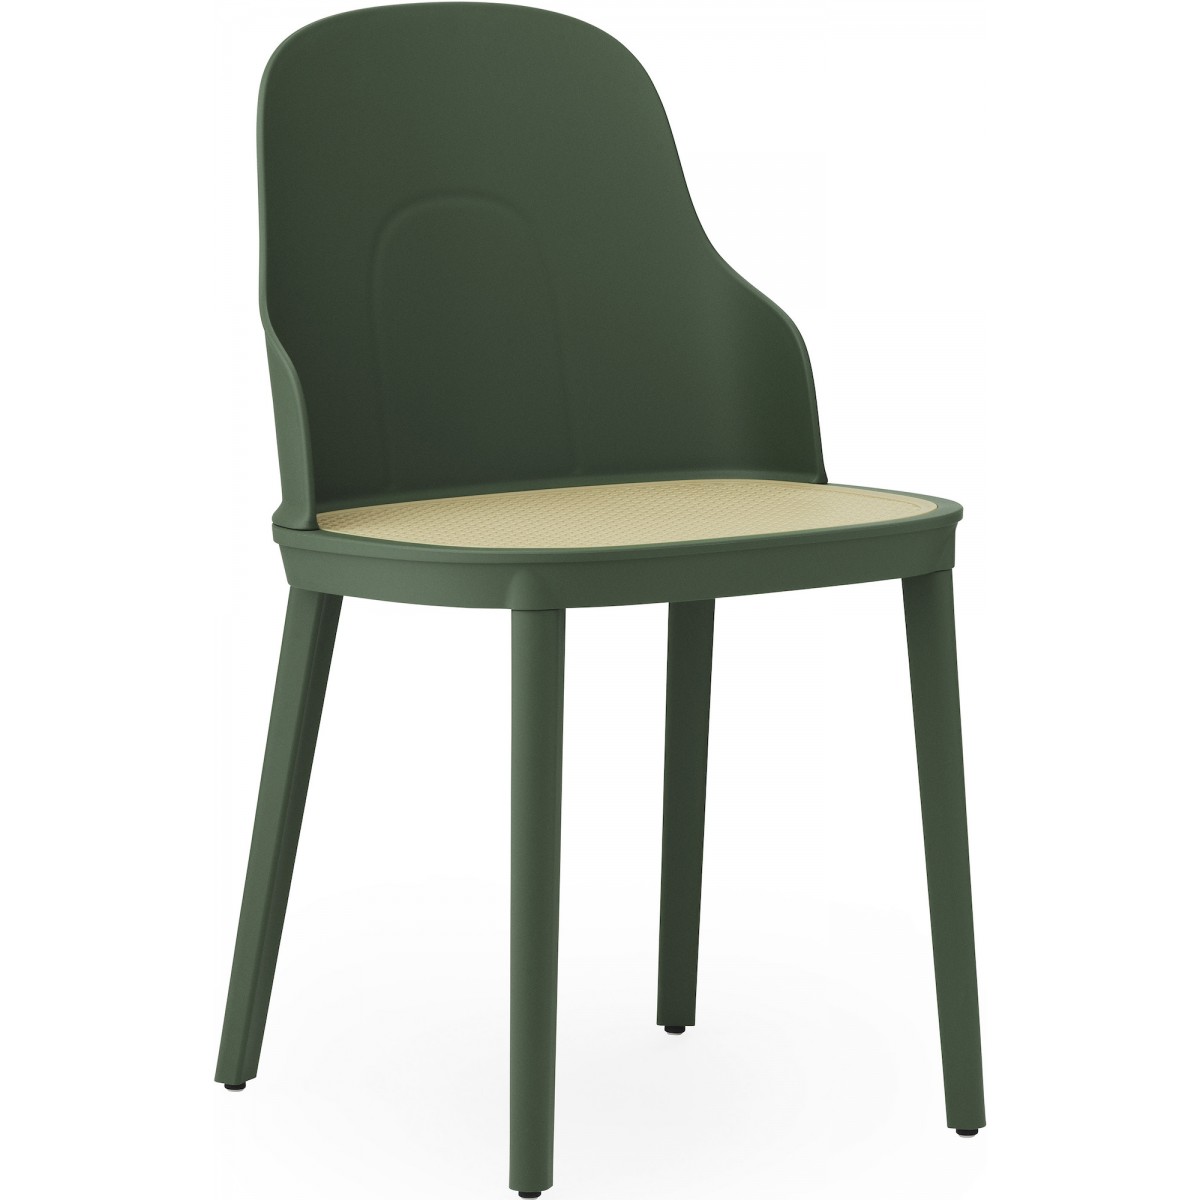 Park Green / braided seat – Allez Chair